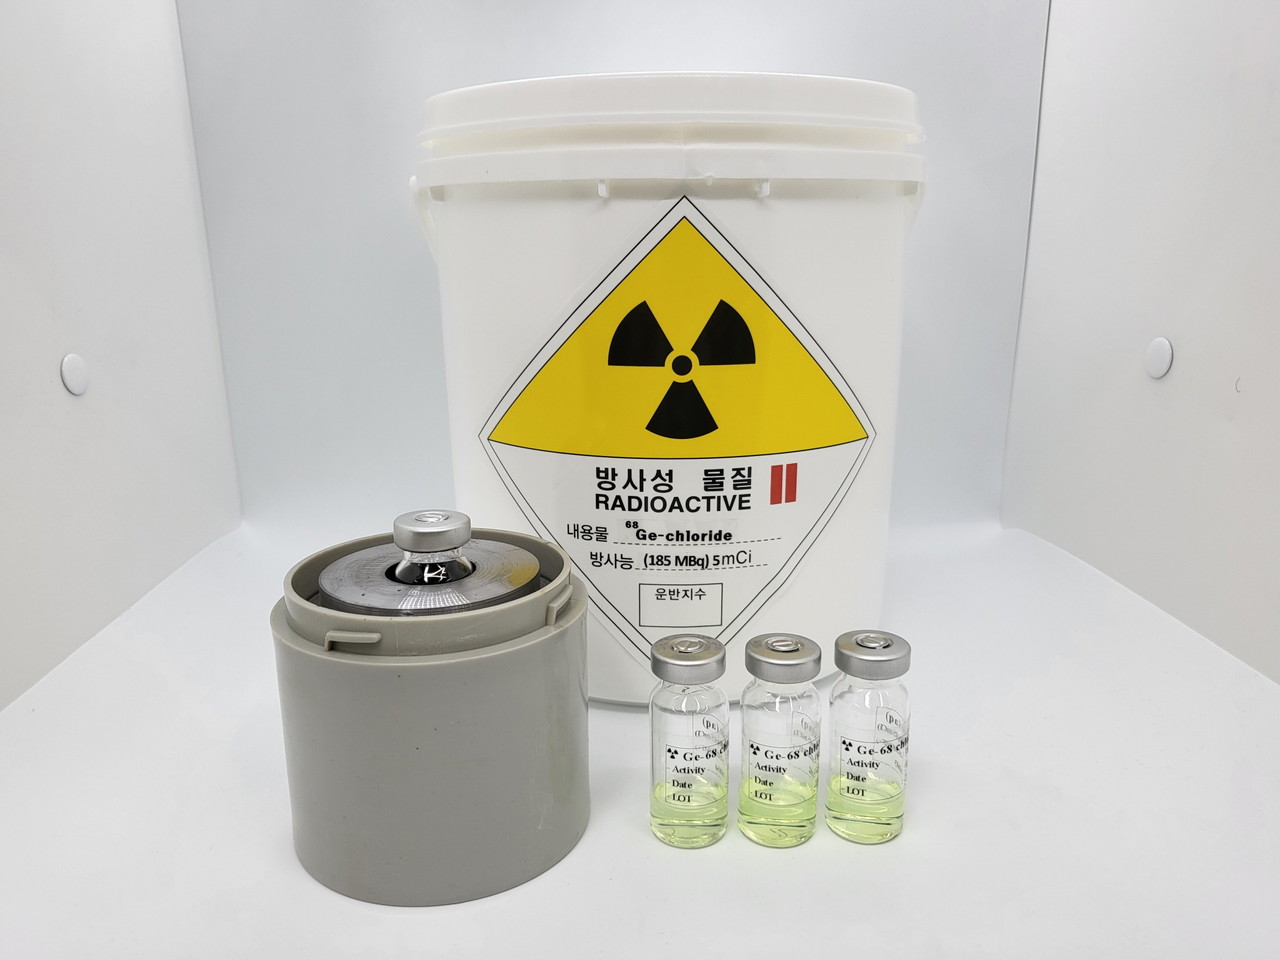 한국원자력연구원은 저마늄-68을 미국 의료기기회사 ‘샌더스 메디컬(Sanders Medical)’에 수출했다. (왼쪽부터) 포장내부 납용기, 포장외장 용기, 저마늄-68 용액